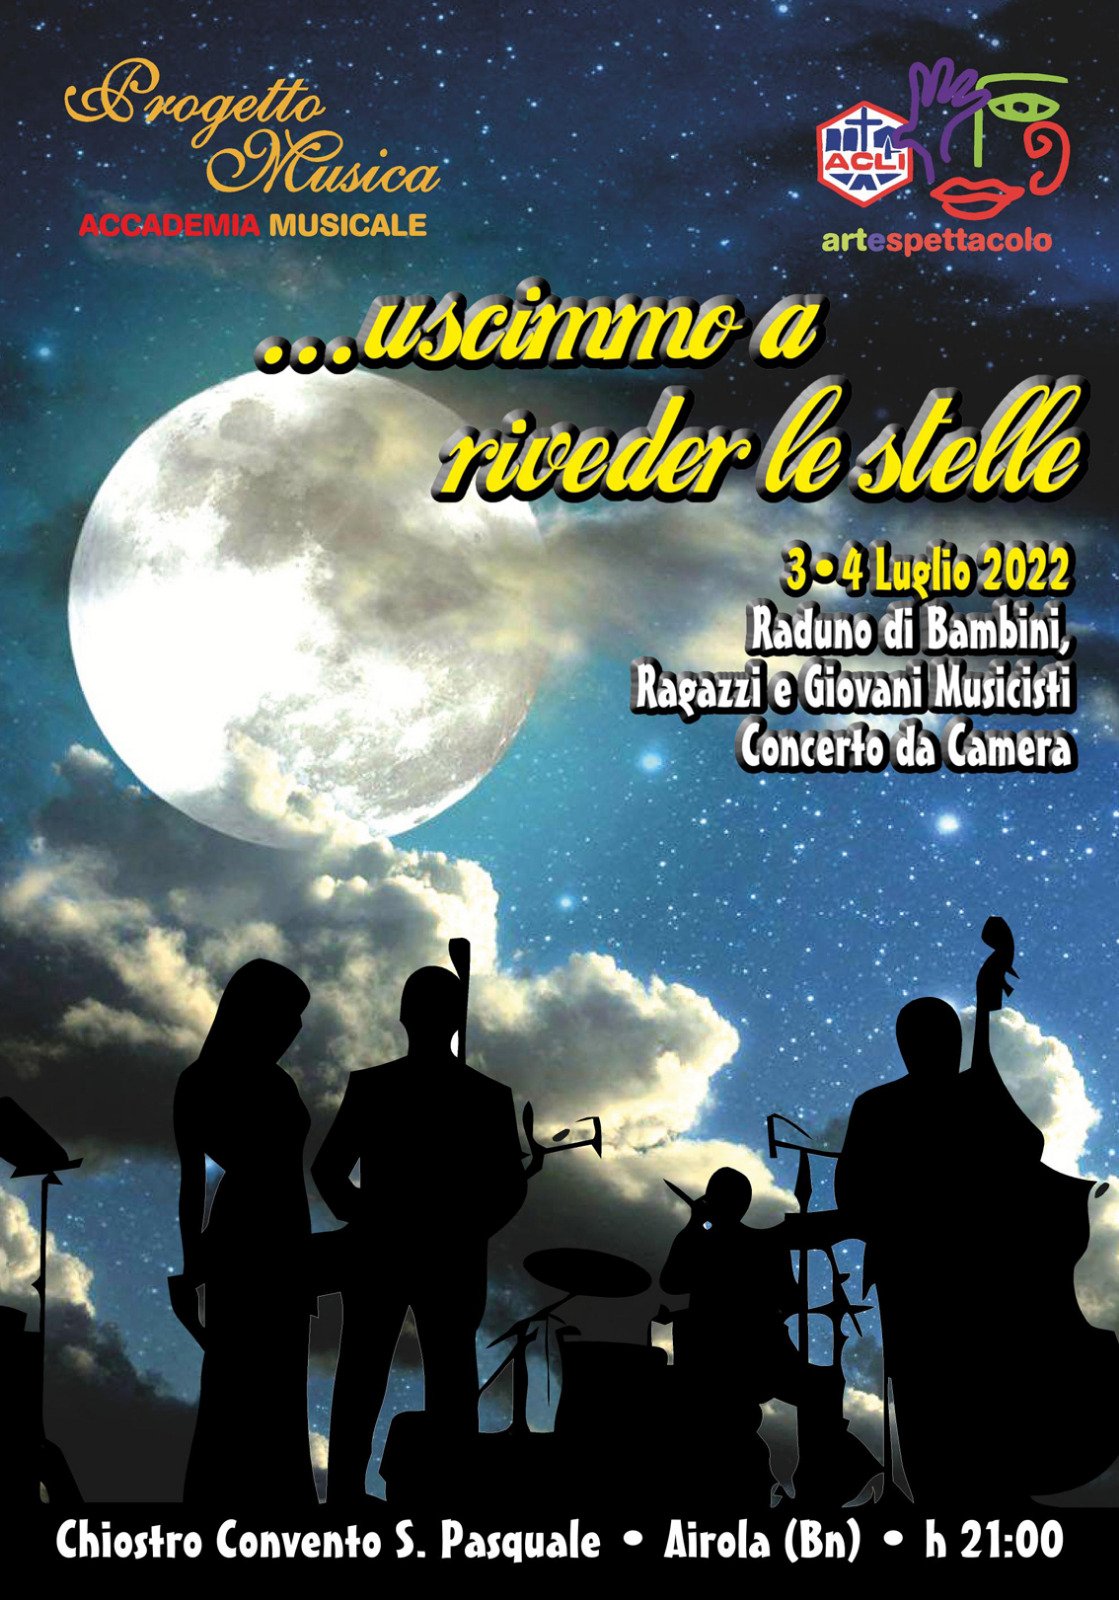 Accademia Progetto Musica AcliArteSpettacolo Sannio, tutto pronto per l’evento “Uscimmo a riveder le stelle” in programma il 3 e il 4 luglio